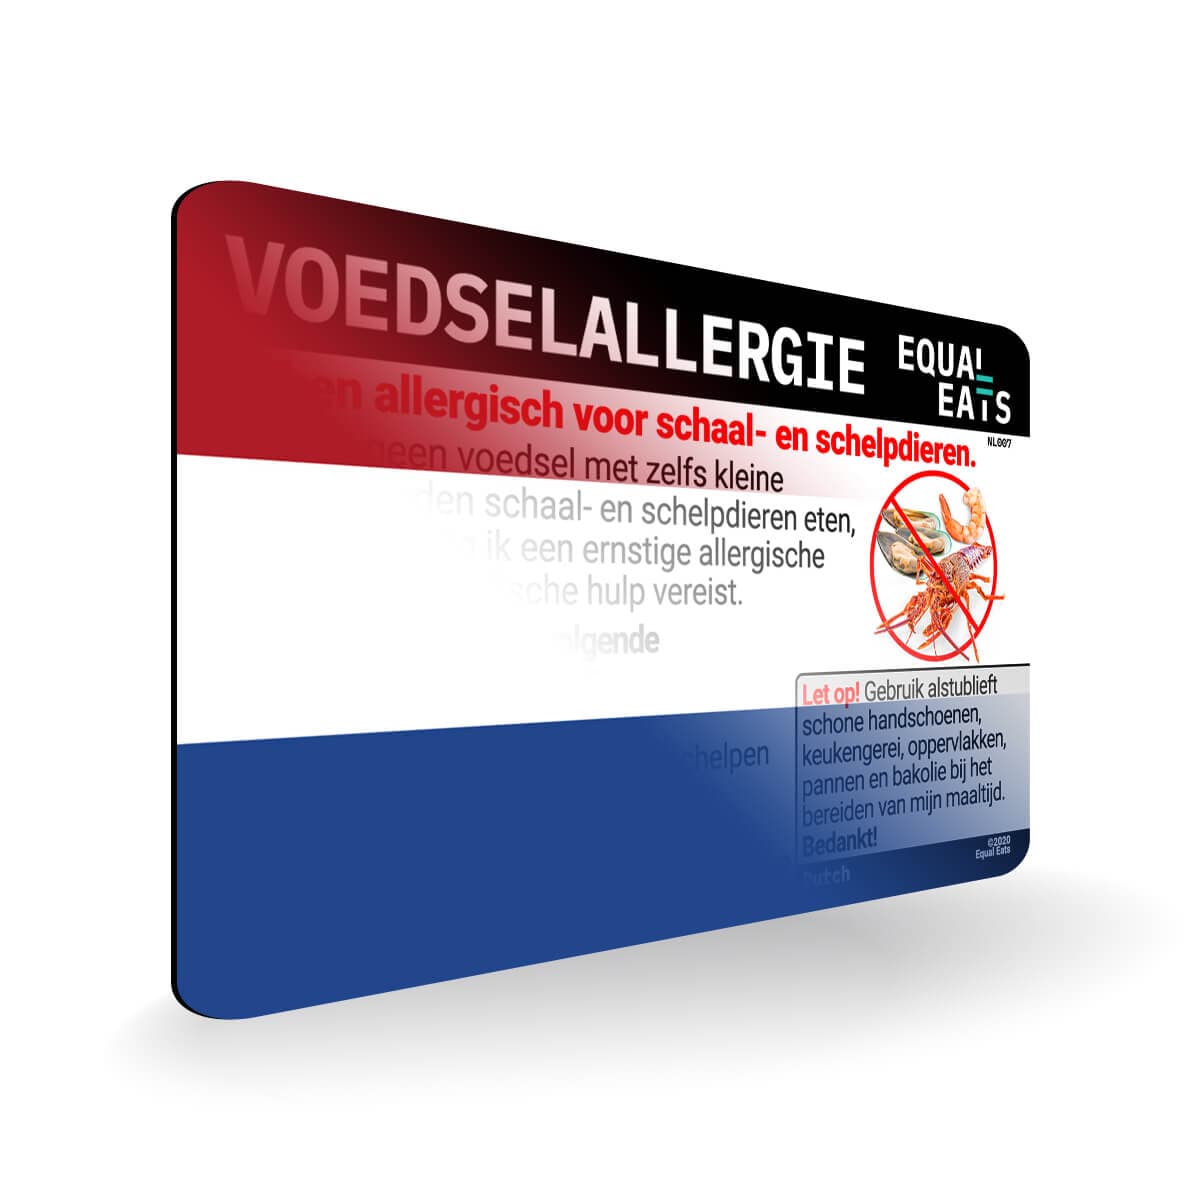 Shellfish Allergy in Dutch. Shellfish Allergy Card for Netherlands